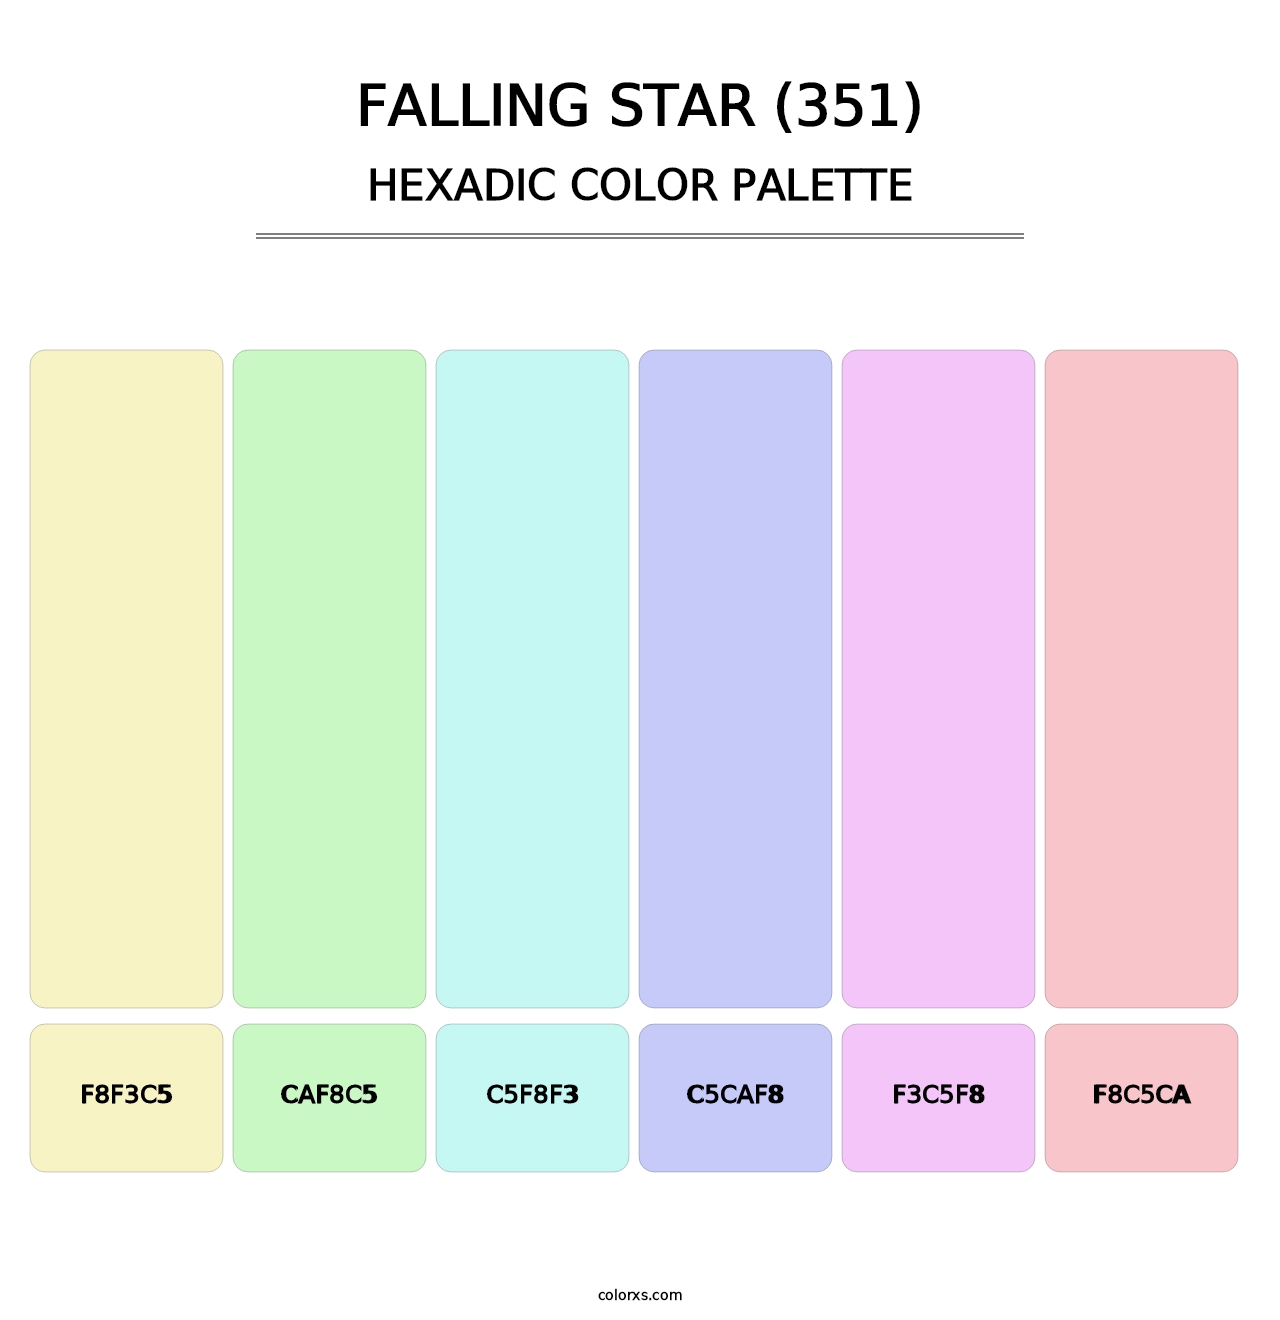 Falling Star (351) - Hexadic Color Palette